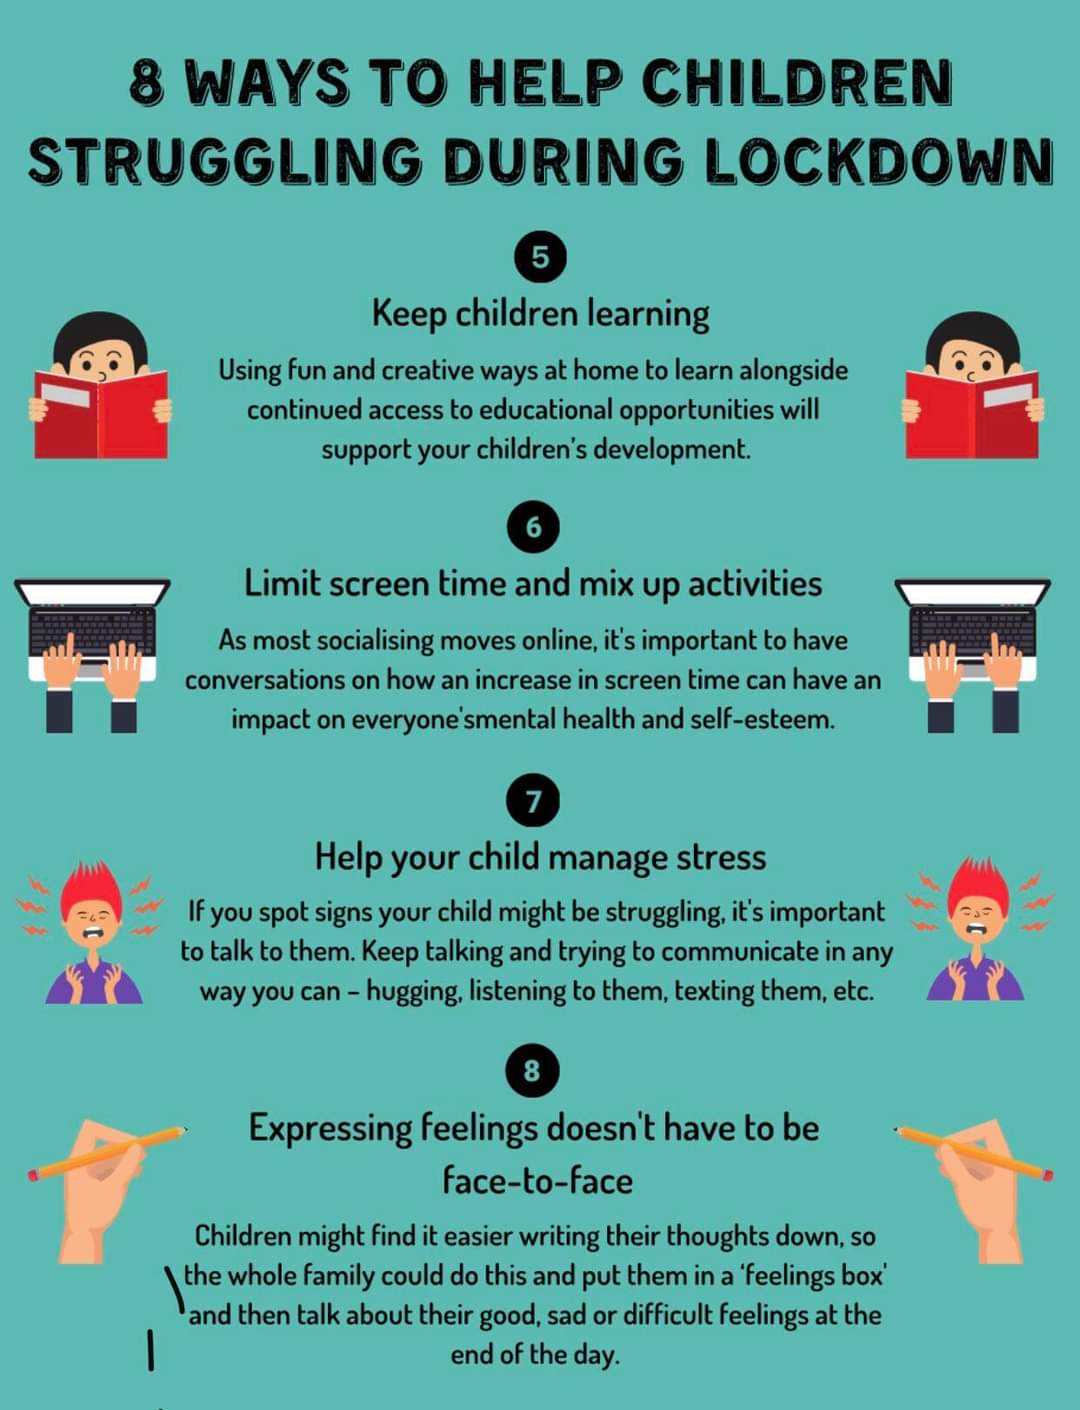 8 Ways to Help Children Struggling in Lockdown: 5 to 8